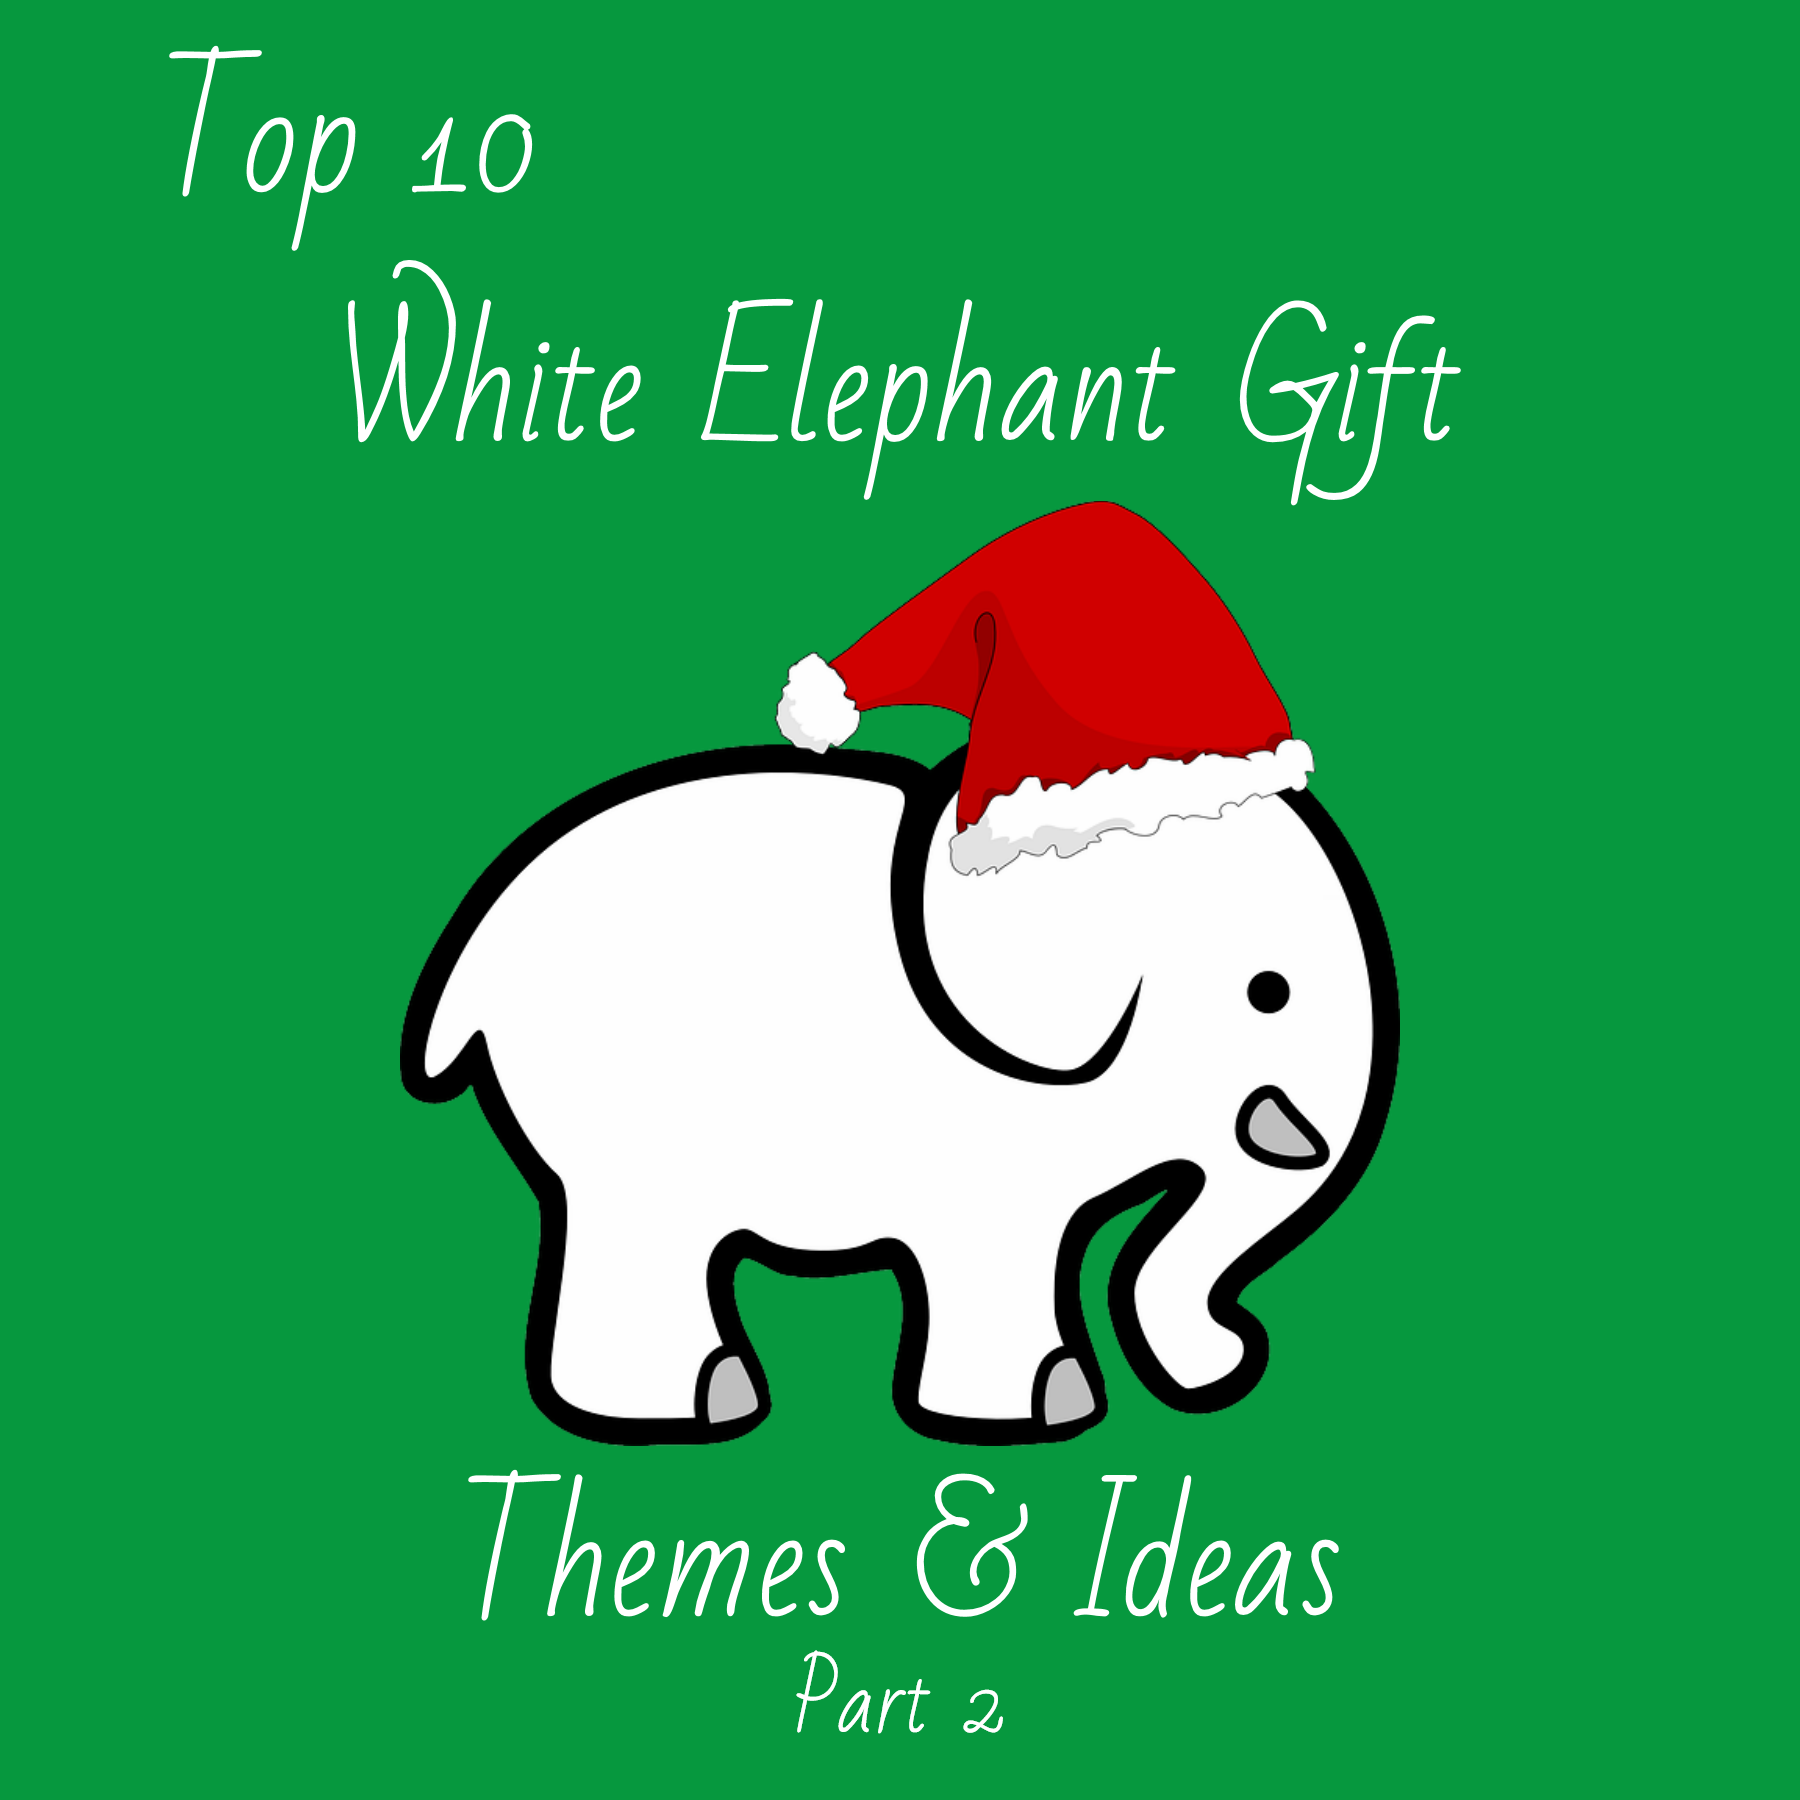 White Elephant Themes & Ideas, Part 2